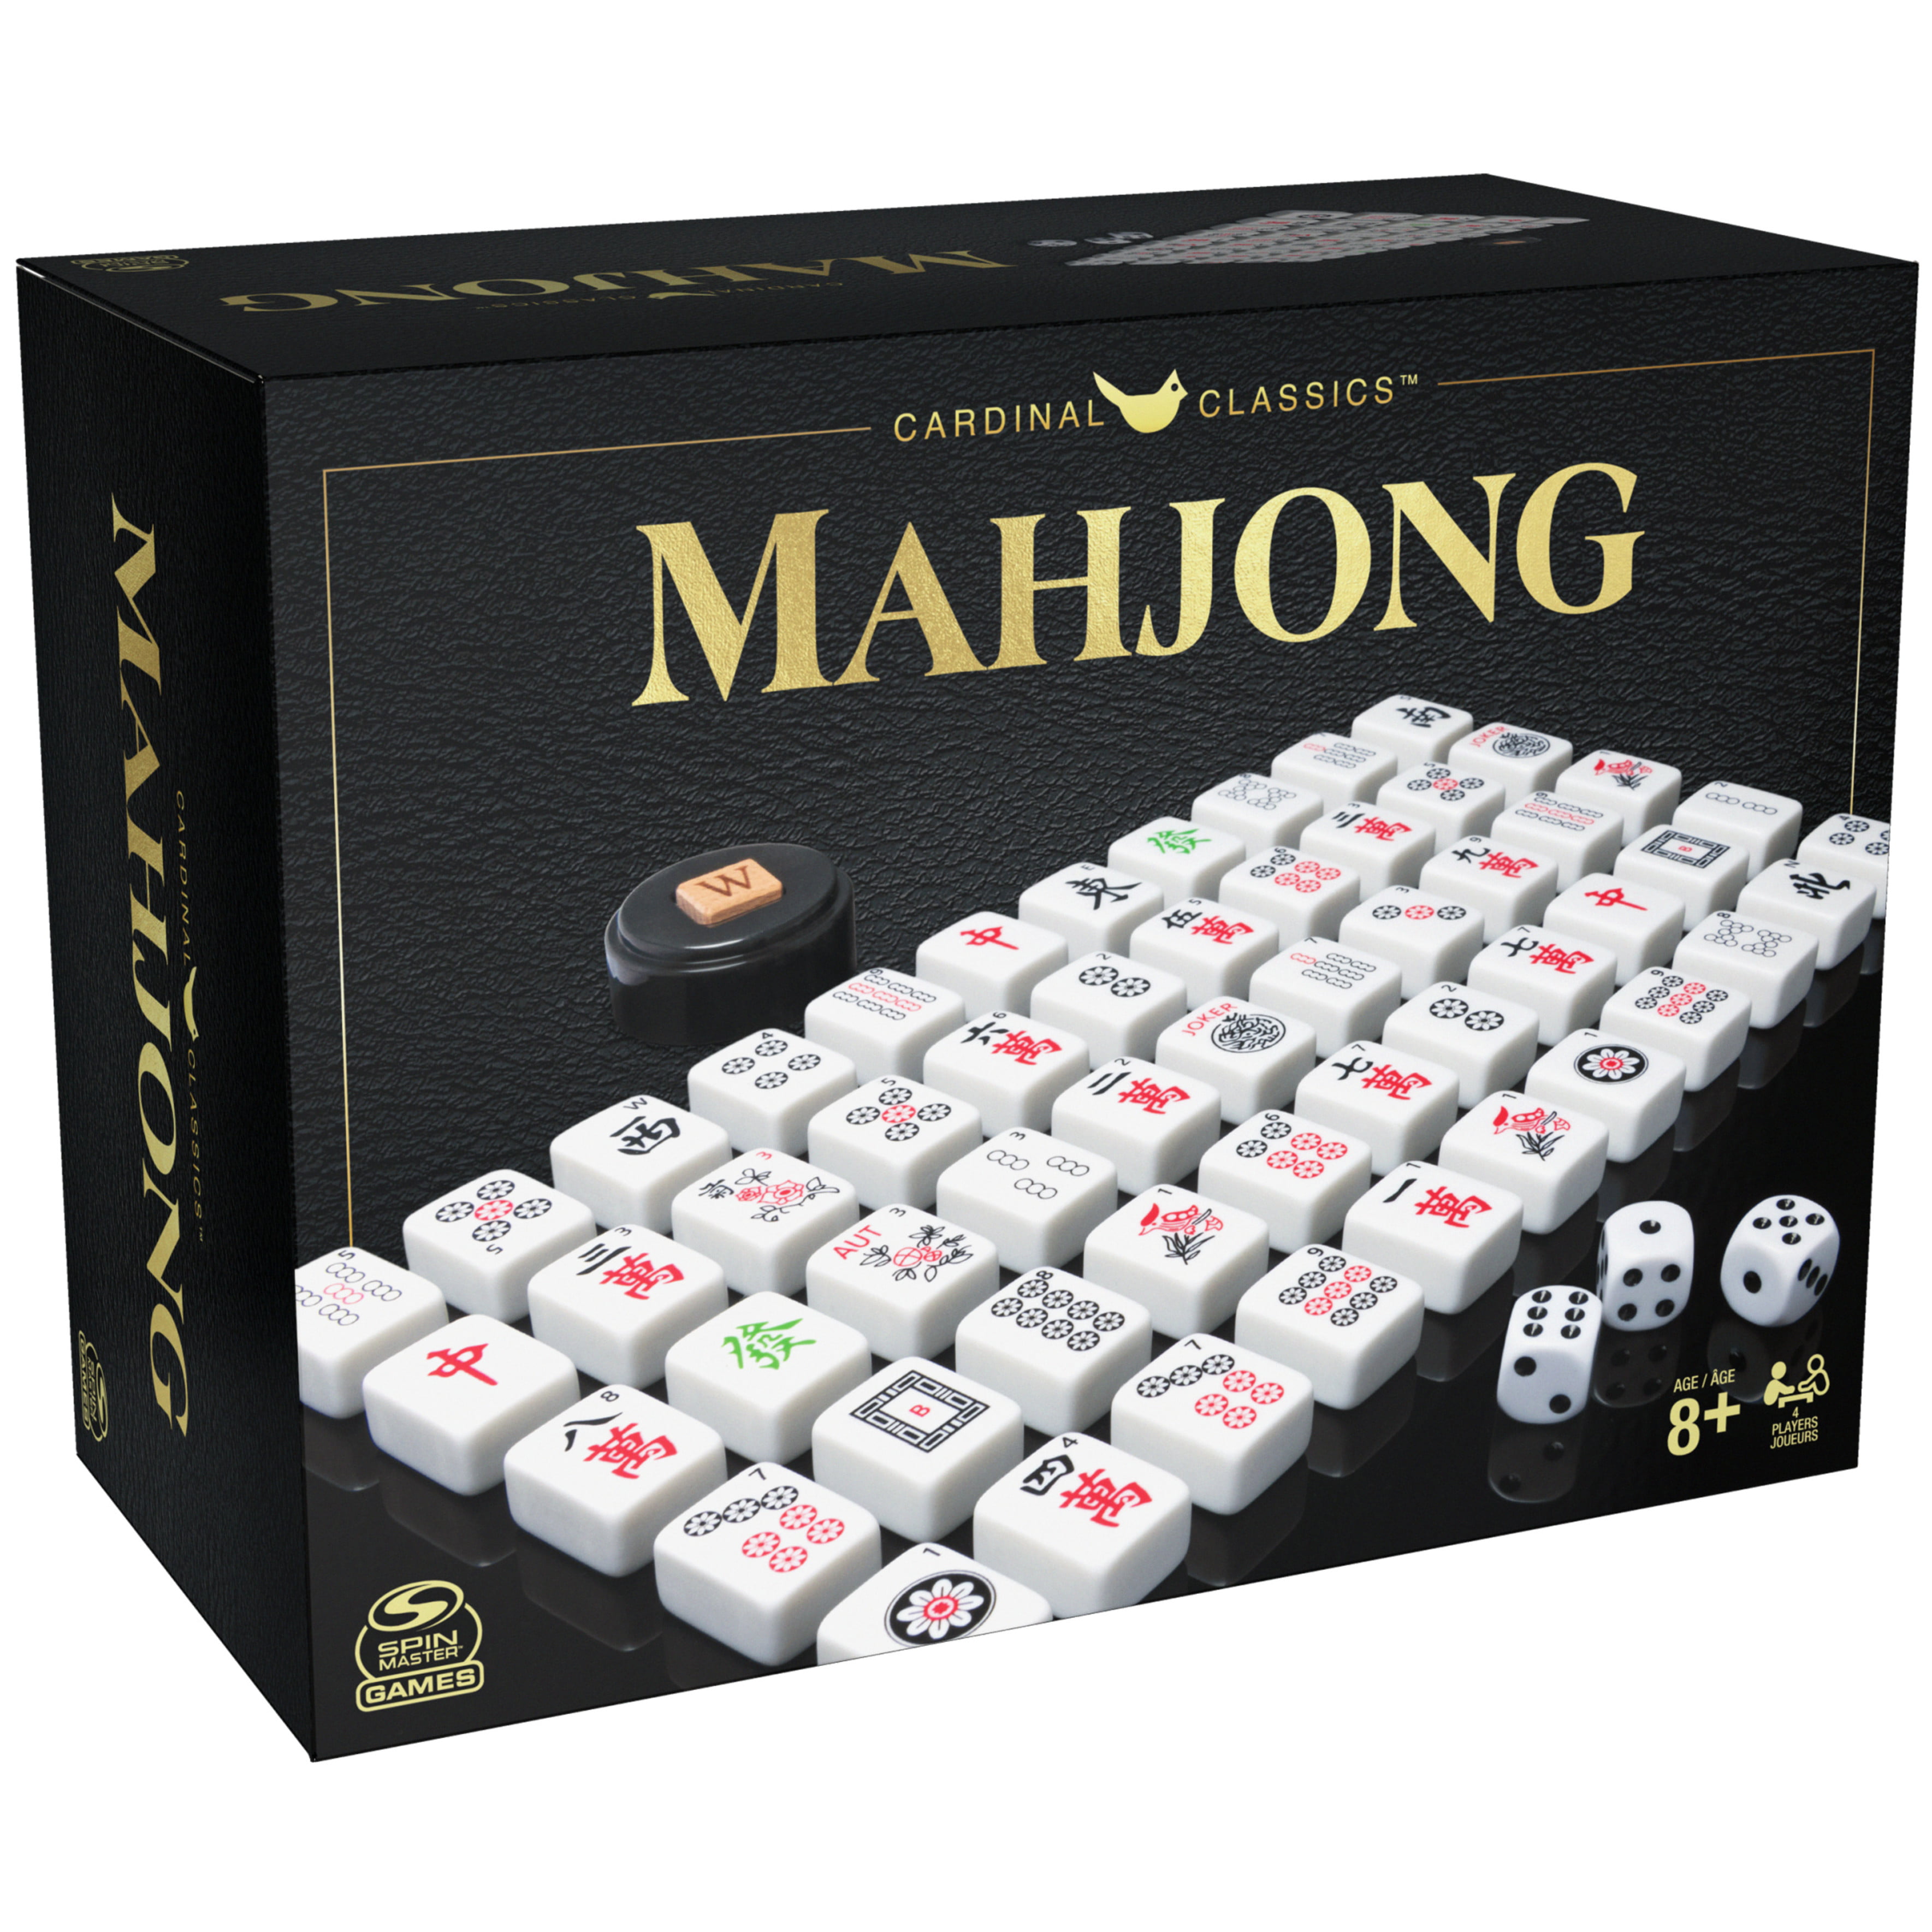 Mahjong Classic - WildTangent Games